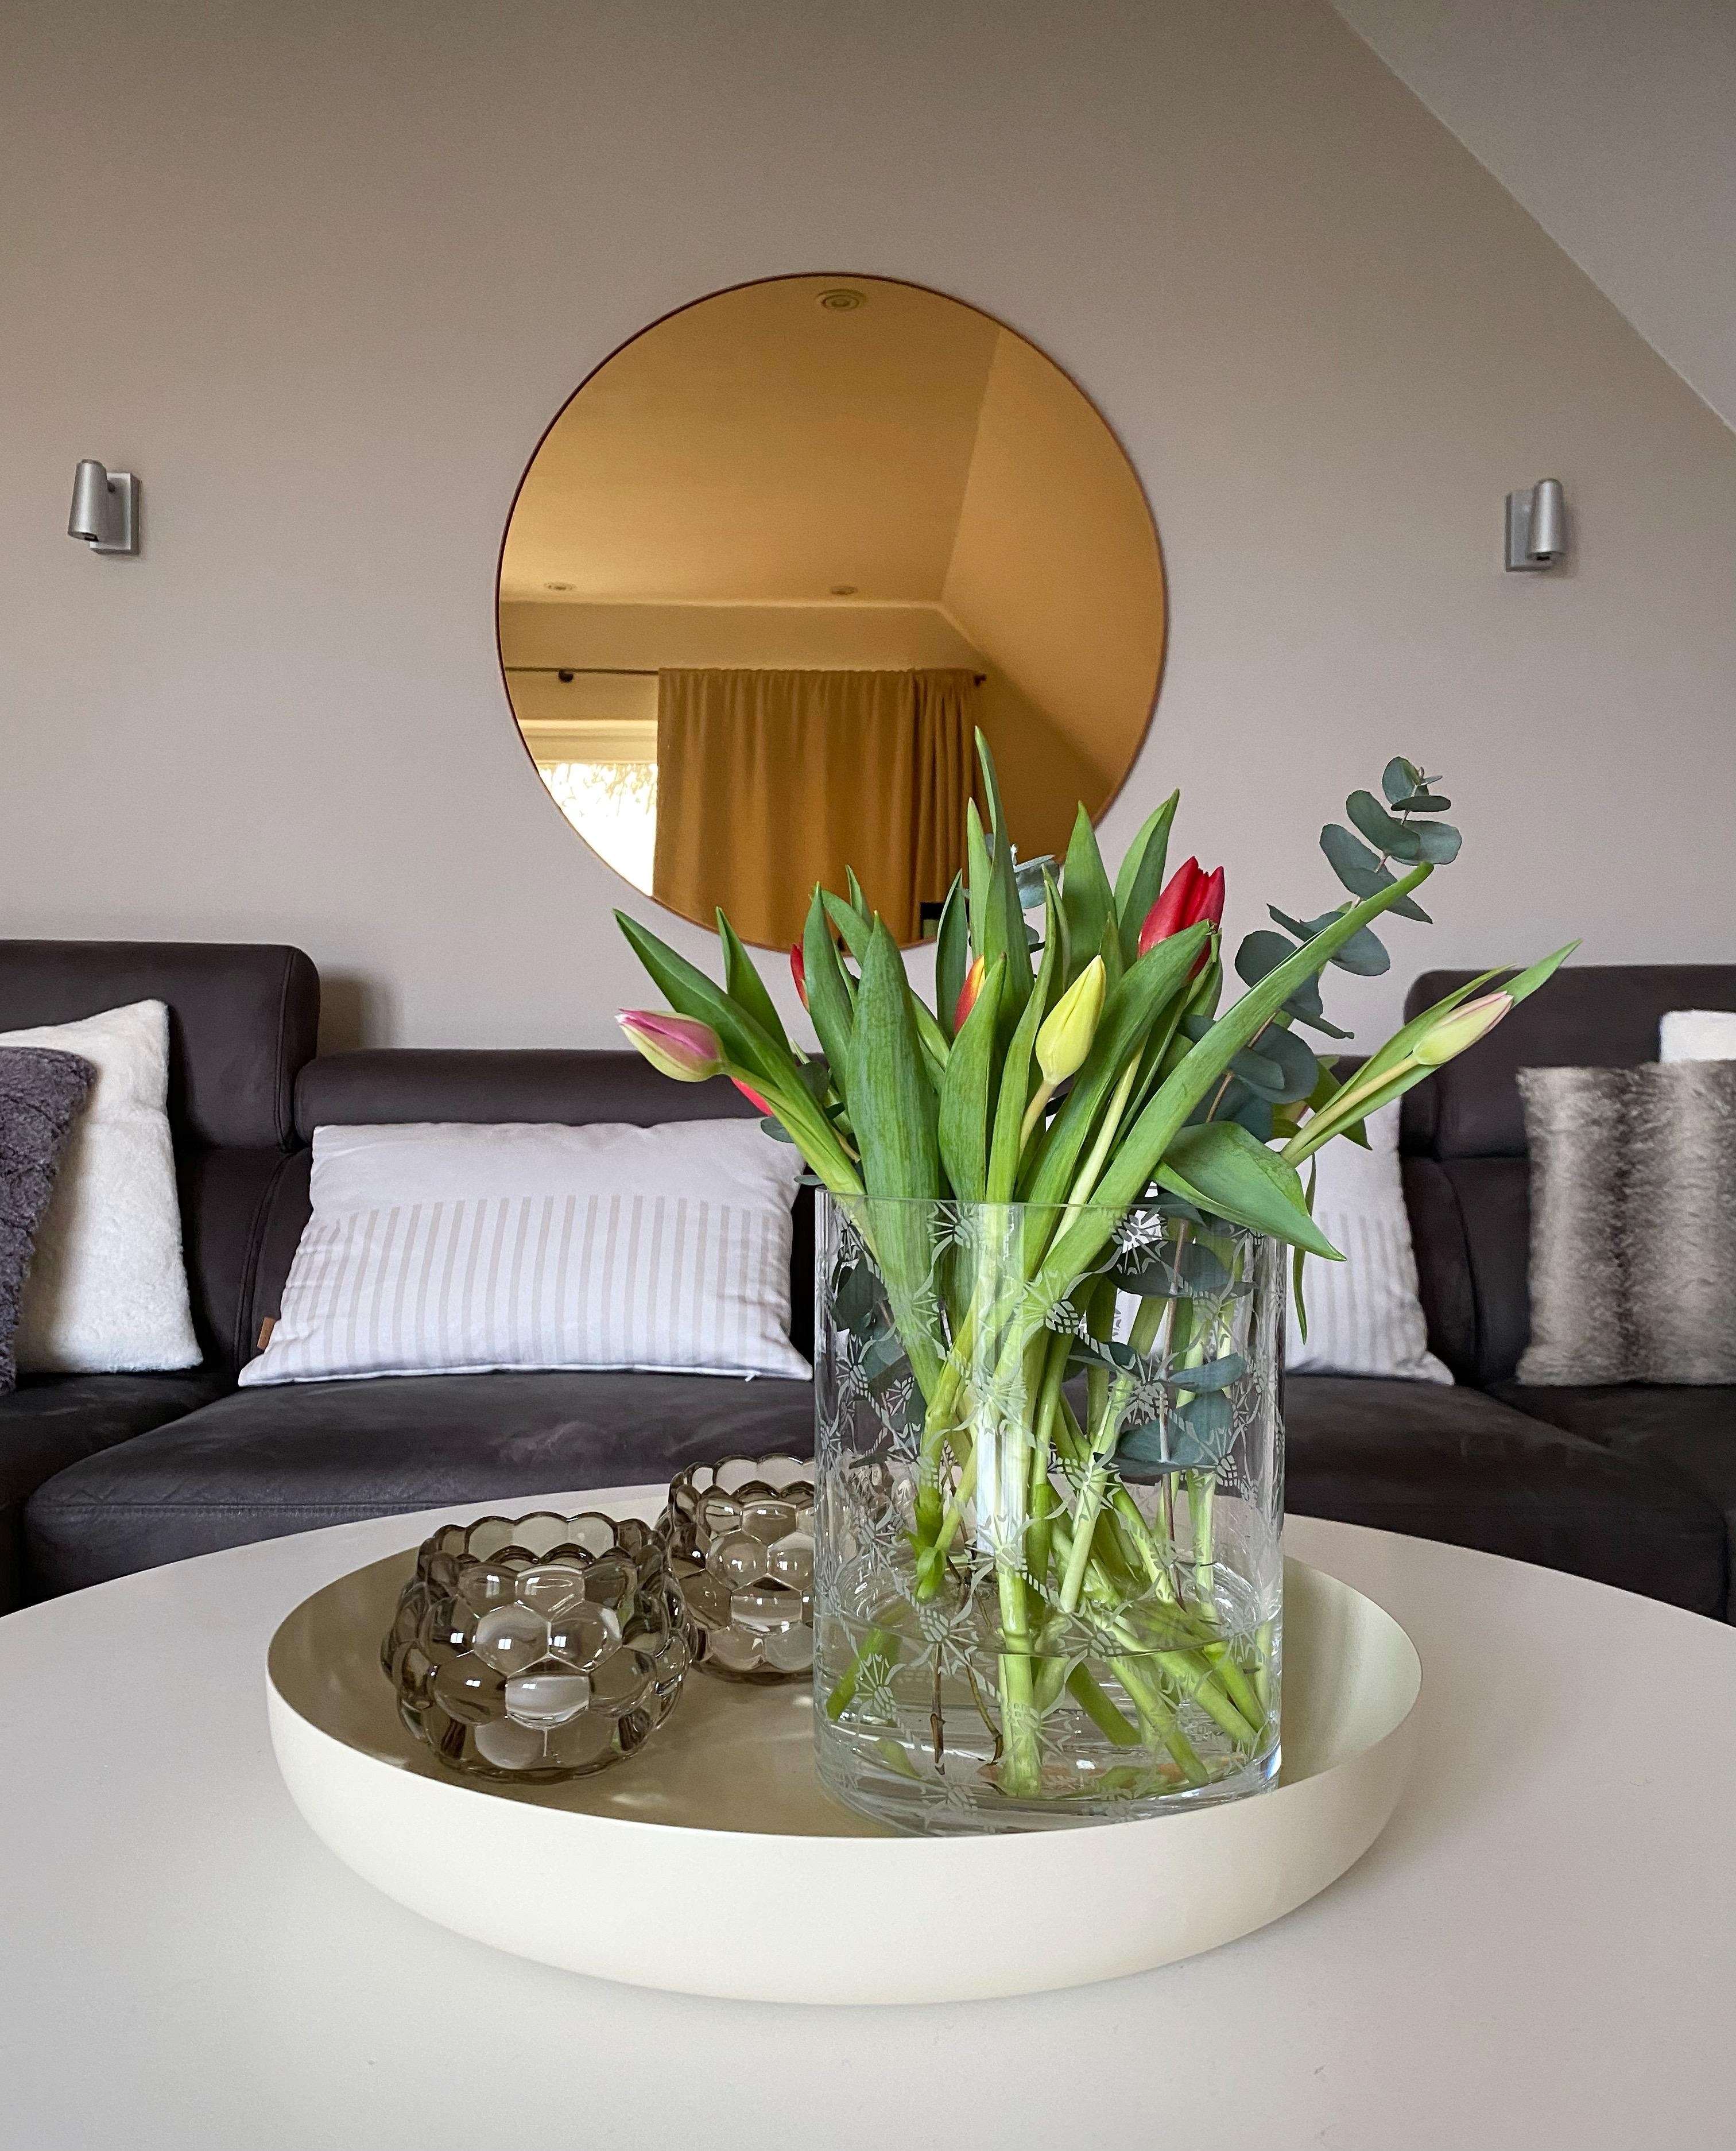 #tulpen #gemütlichesplätzchen #wohnzimmer #homesweethome
#deko